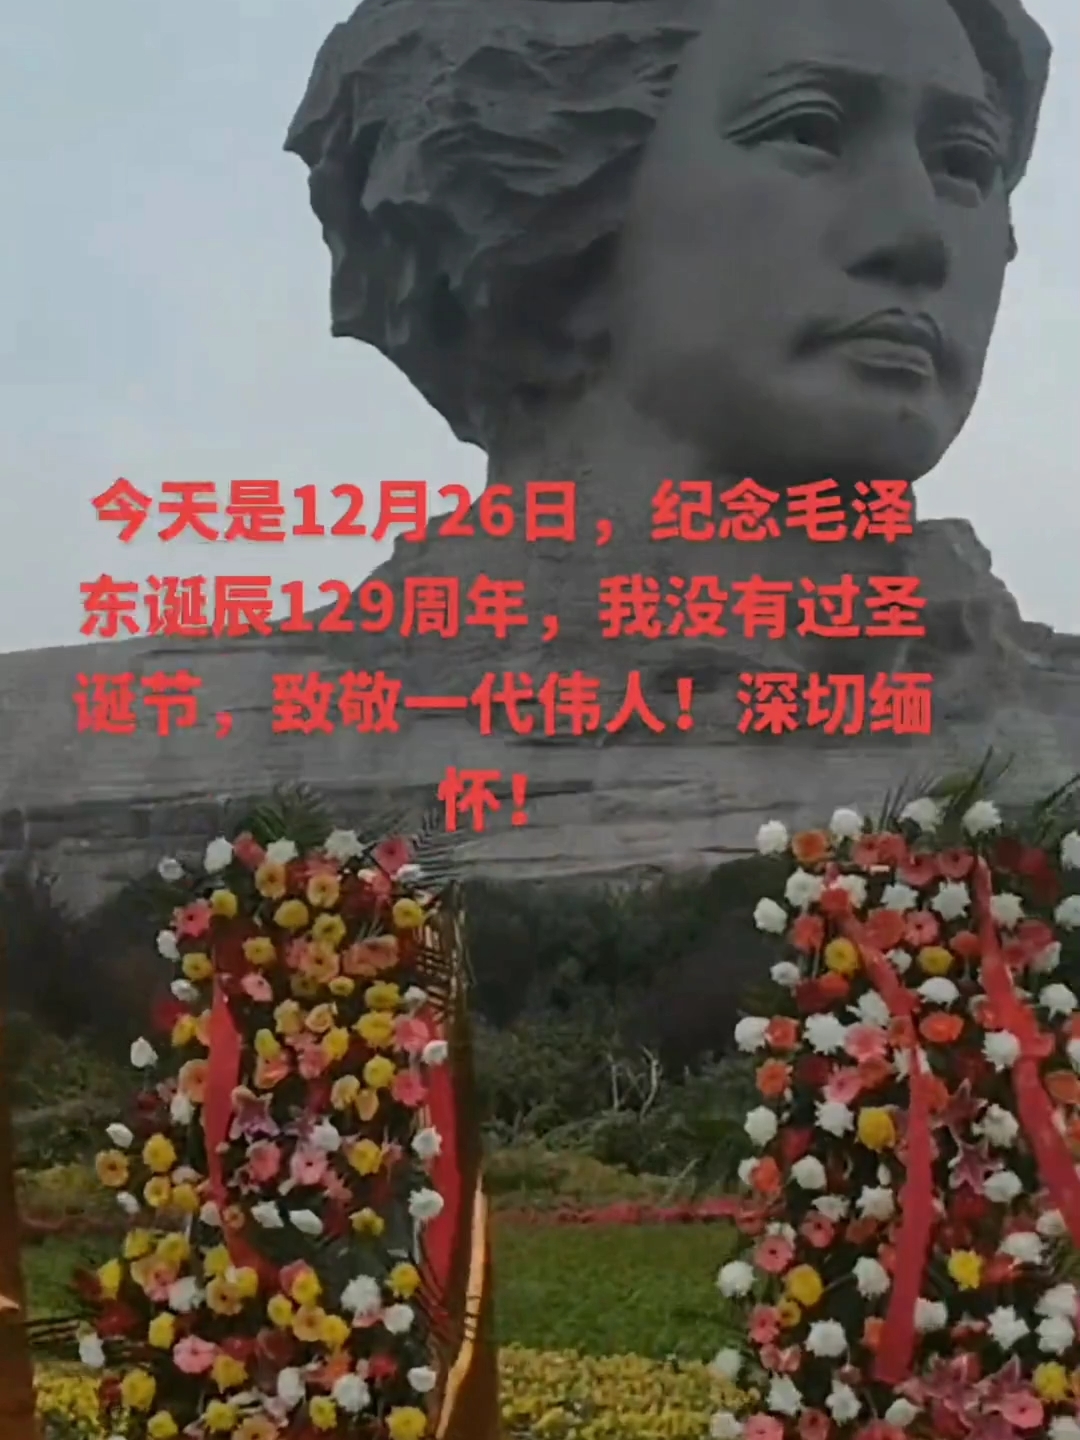 今天是12月26日，纪念毛泽东诞辰129周年，我没有过圣诞节，致敬一代伟人！深切缅怀！#致敬伟人 #